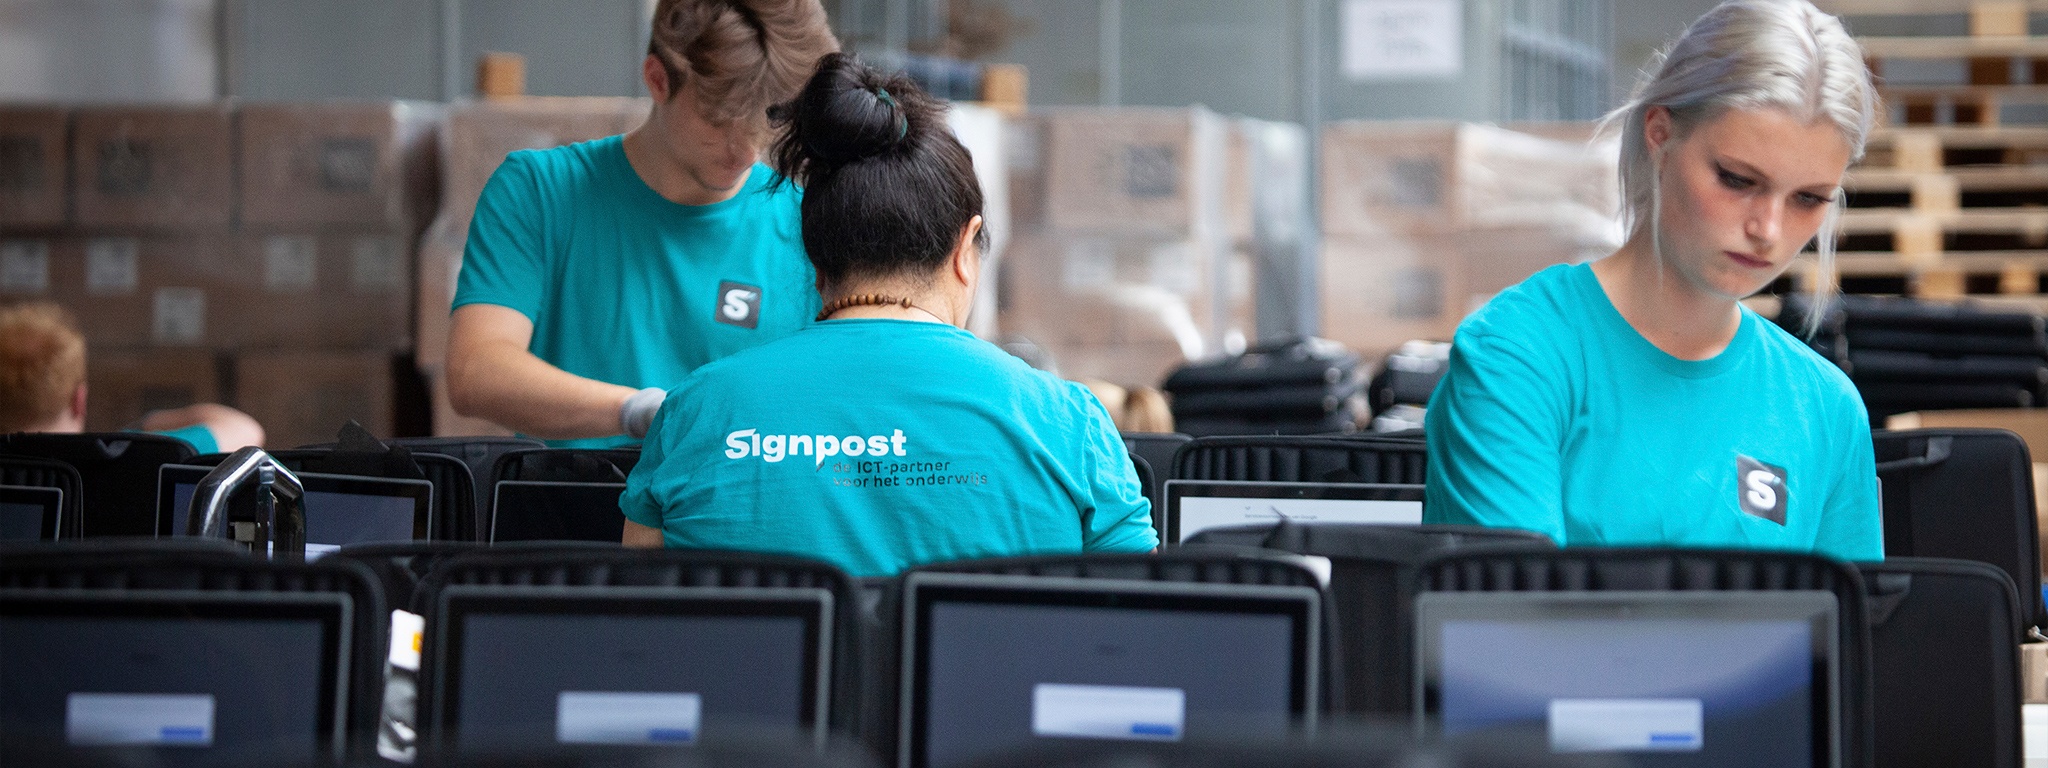 El equipo de almacenes de Signpost configurando portátiles para su envío